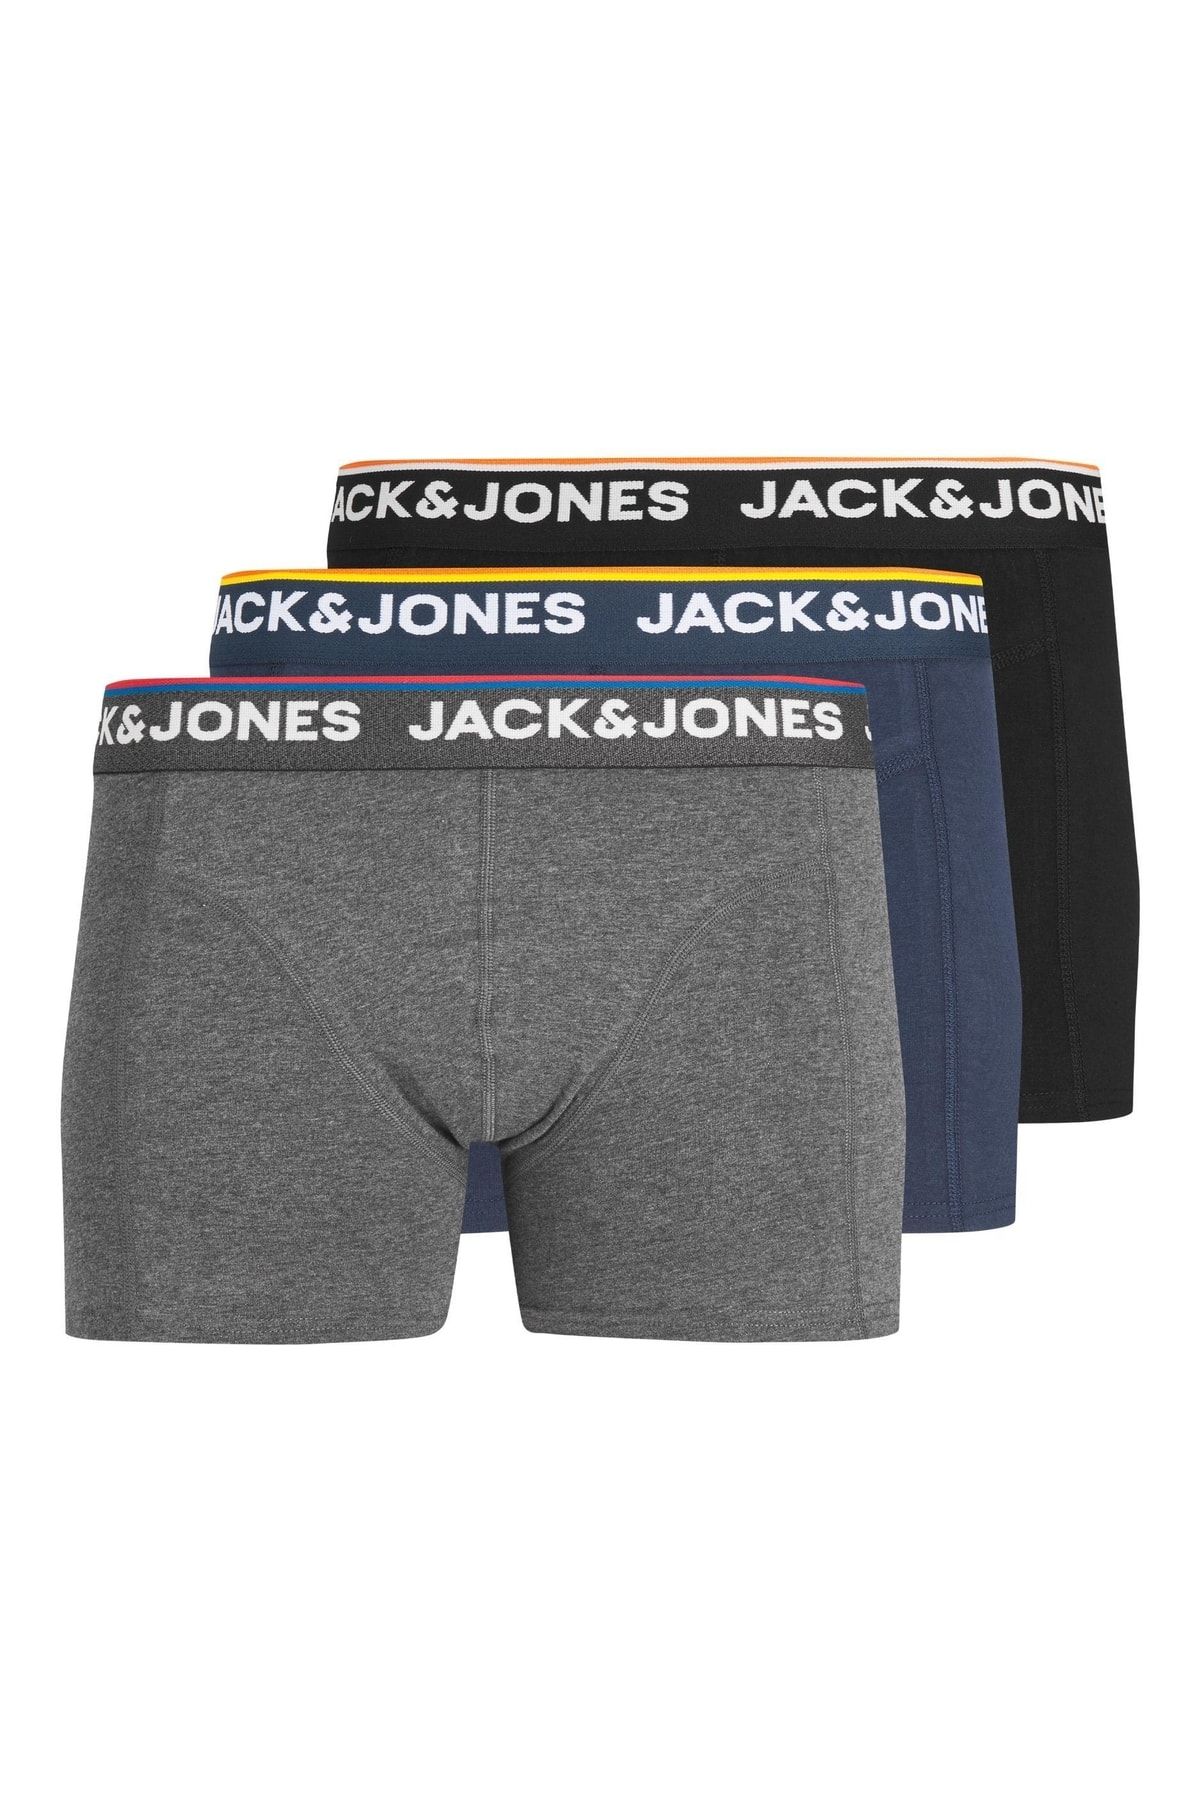 Jack & Jones Jack Jones Don Trunks 3 Pack Erkek Gri Boxer 12213087-05